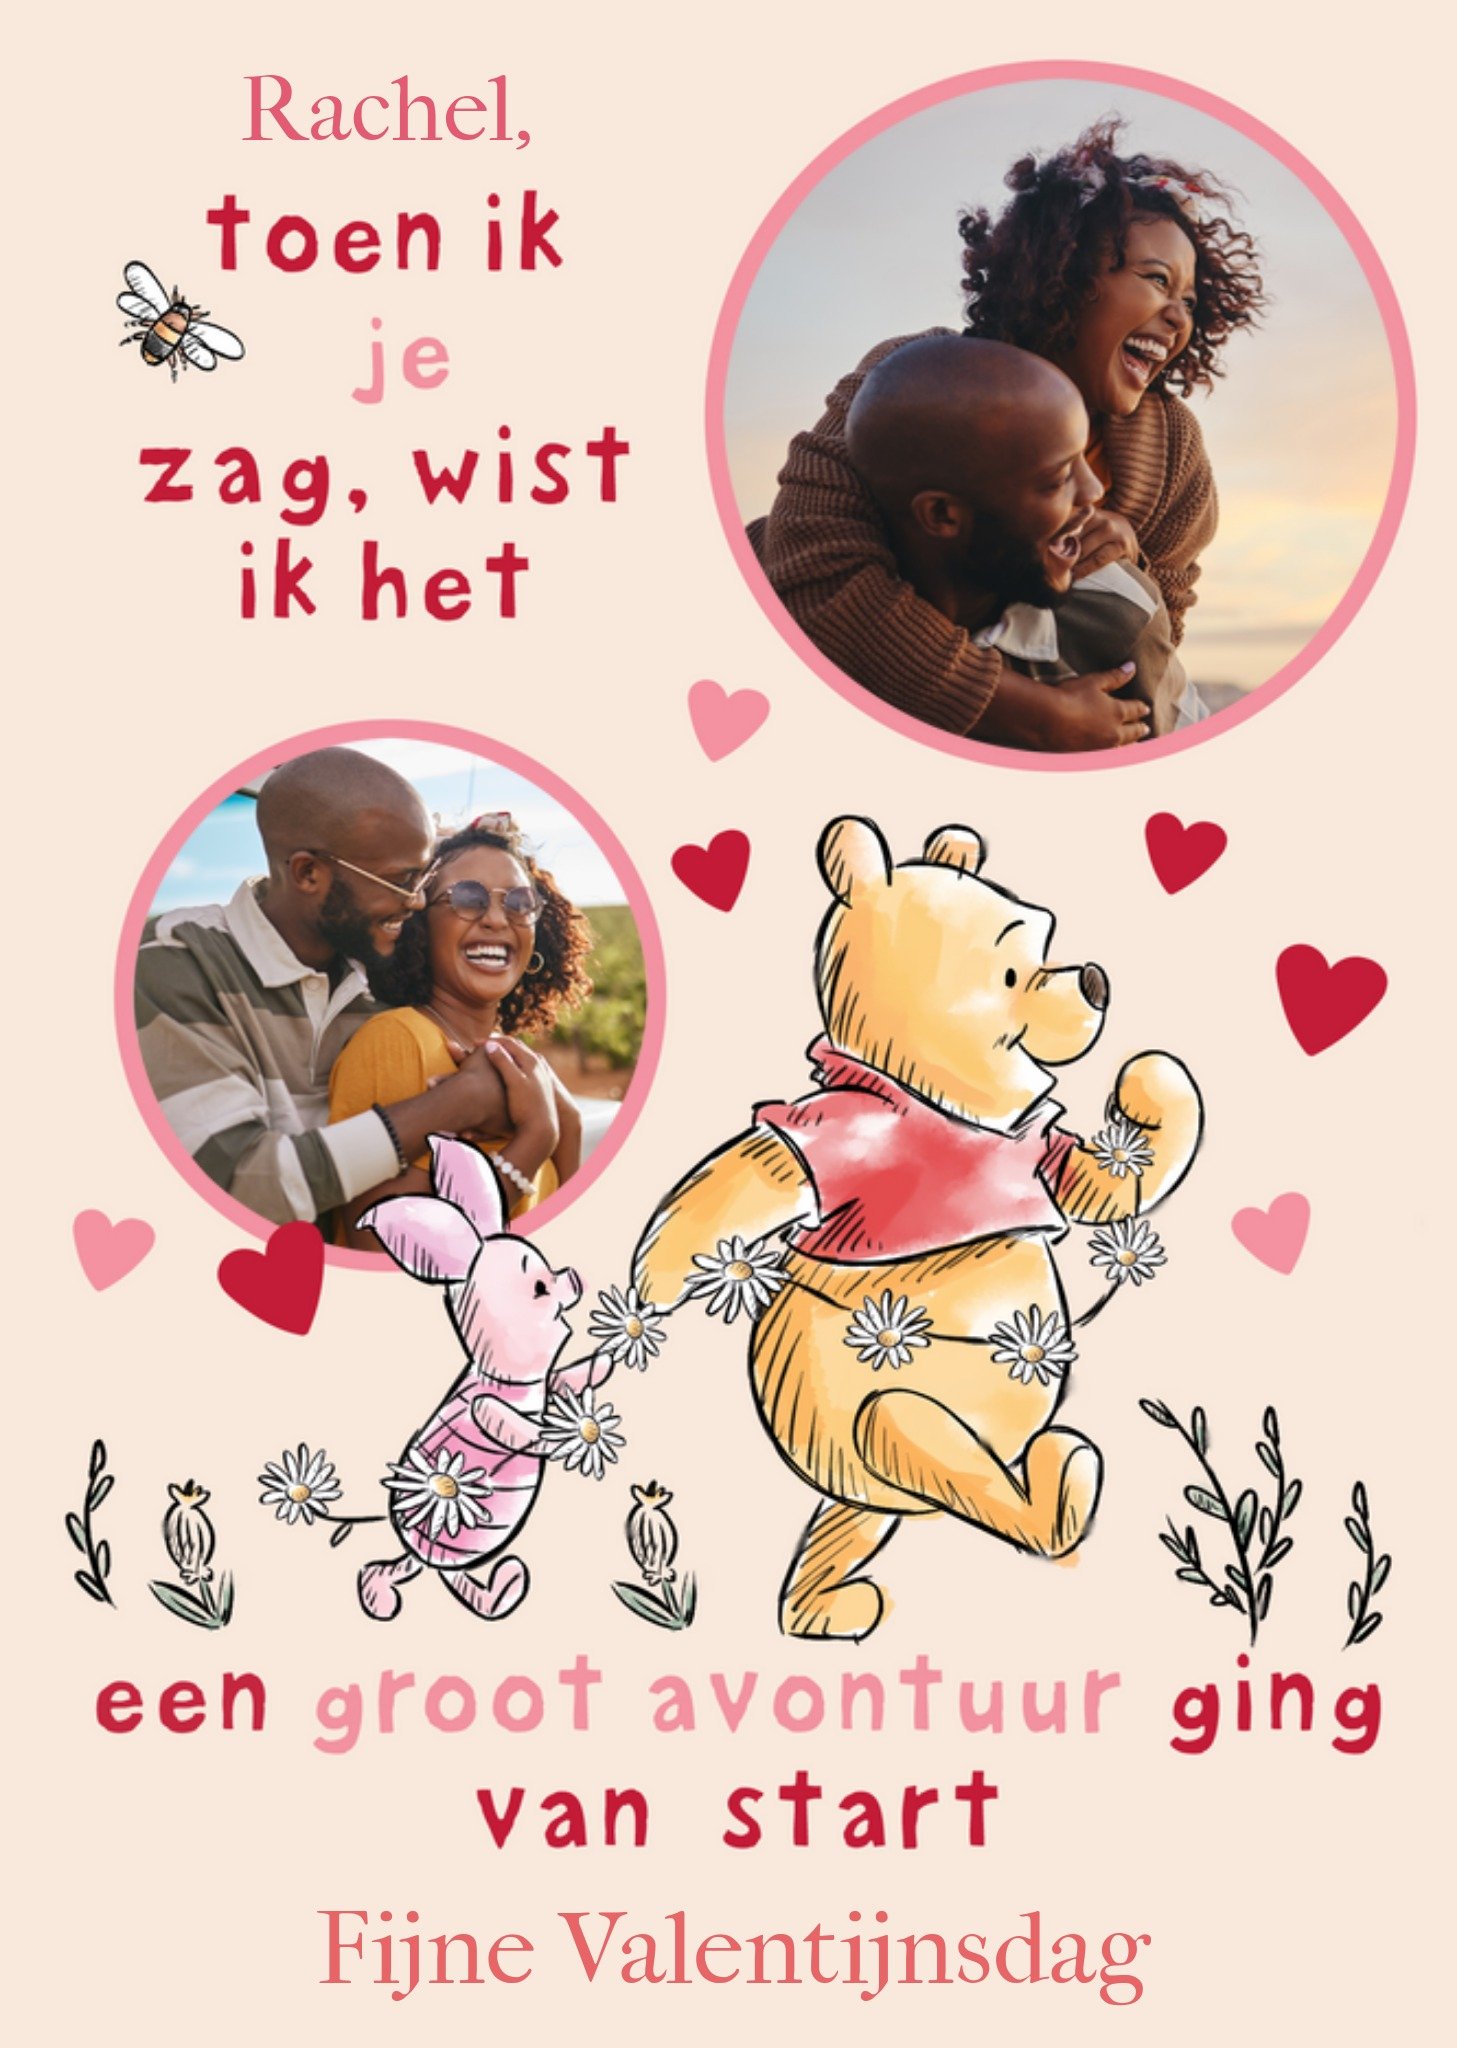 Disney - Valentijnskaart - Winnie de Poeh - Groot avontuur